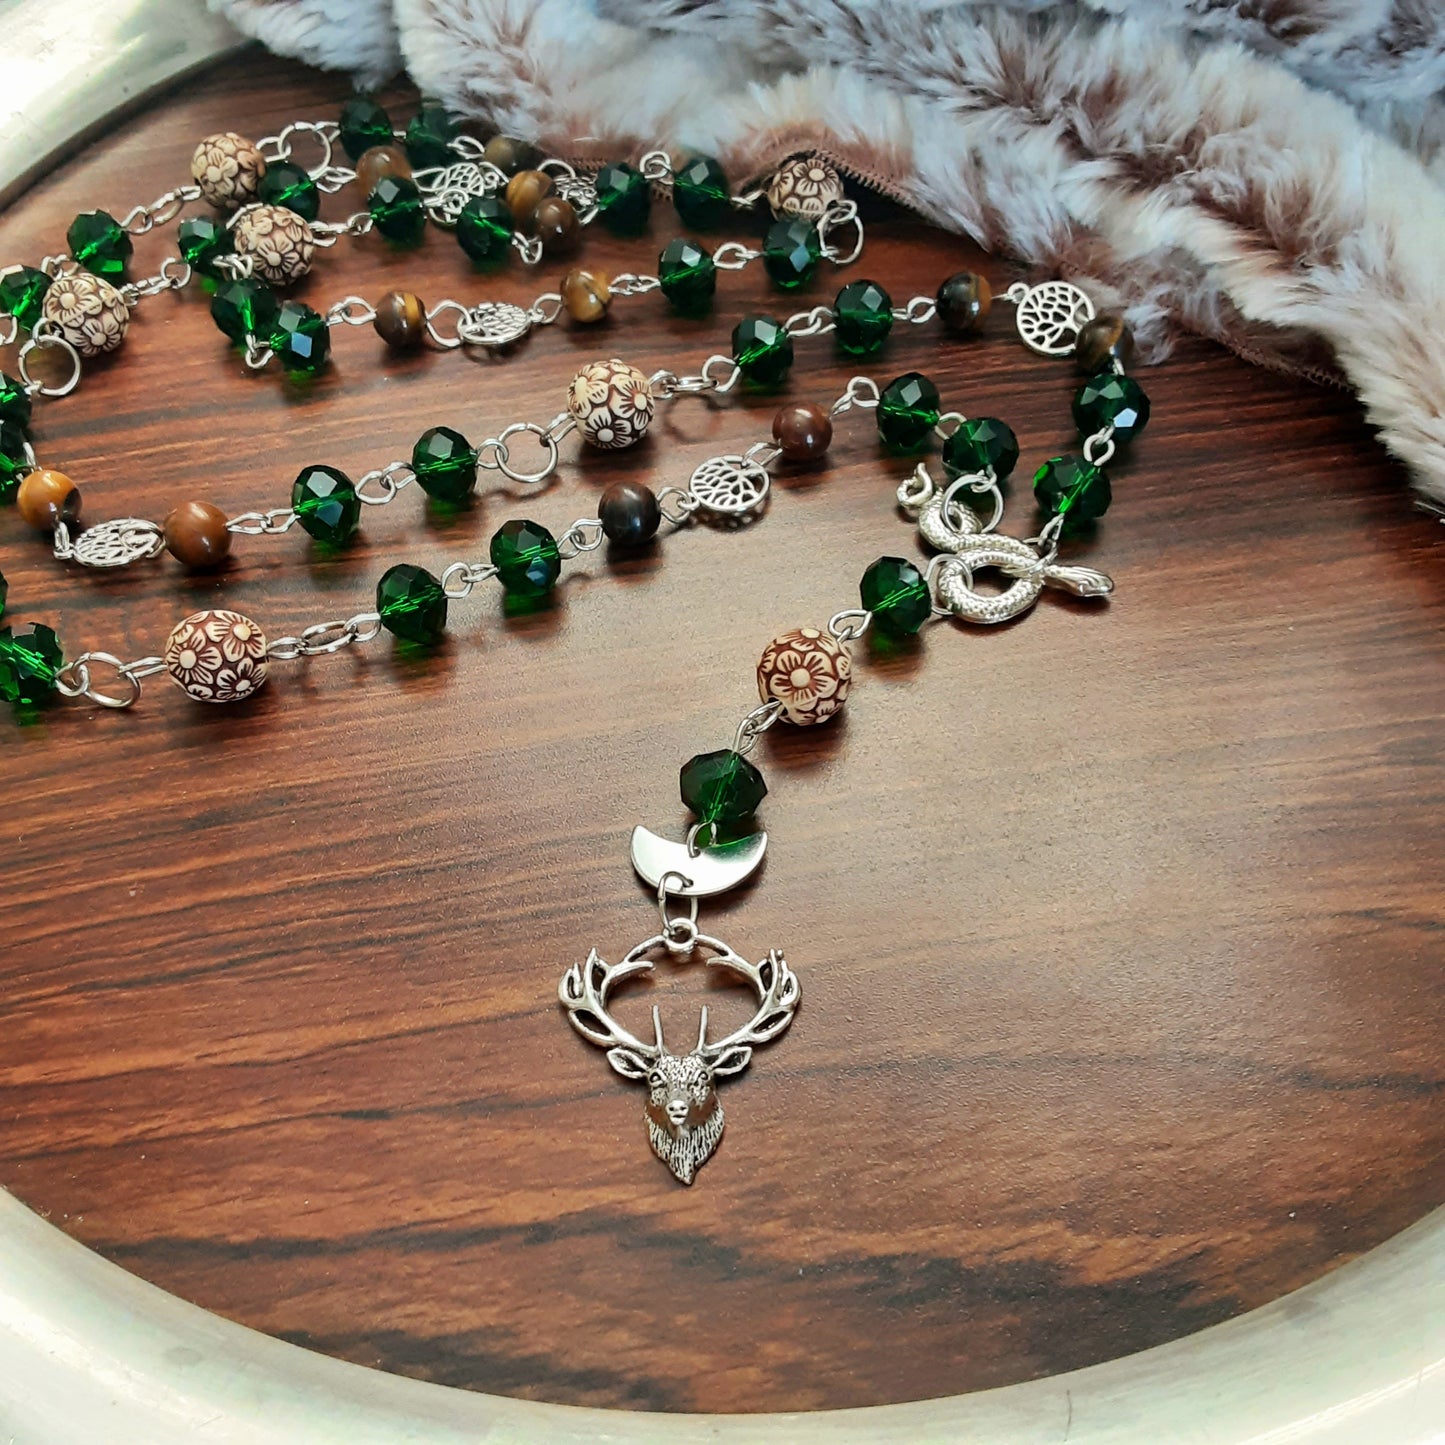 Cernunnos Prayer beads